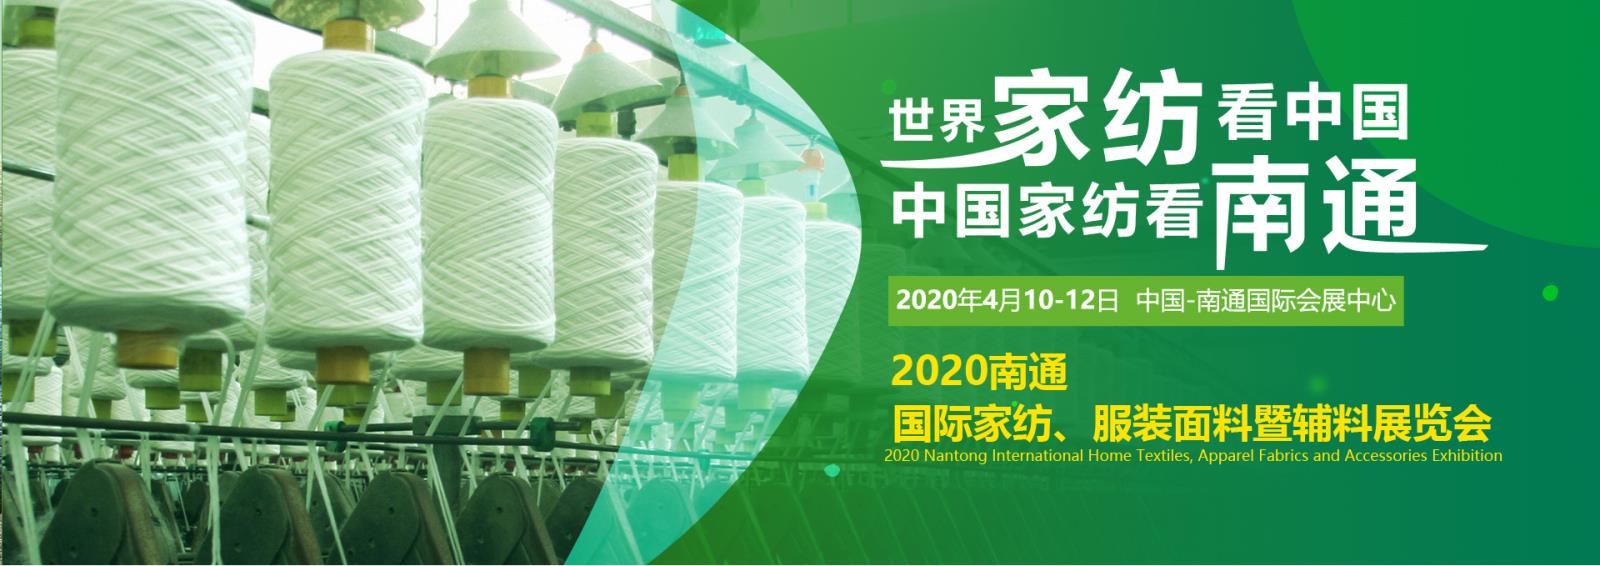 江苏纺织业连续9年跻身全省6大万亿级行业